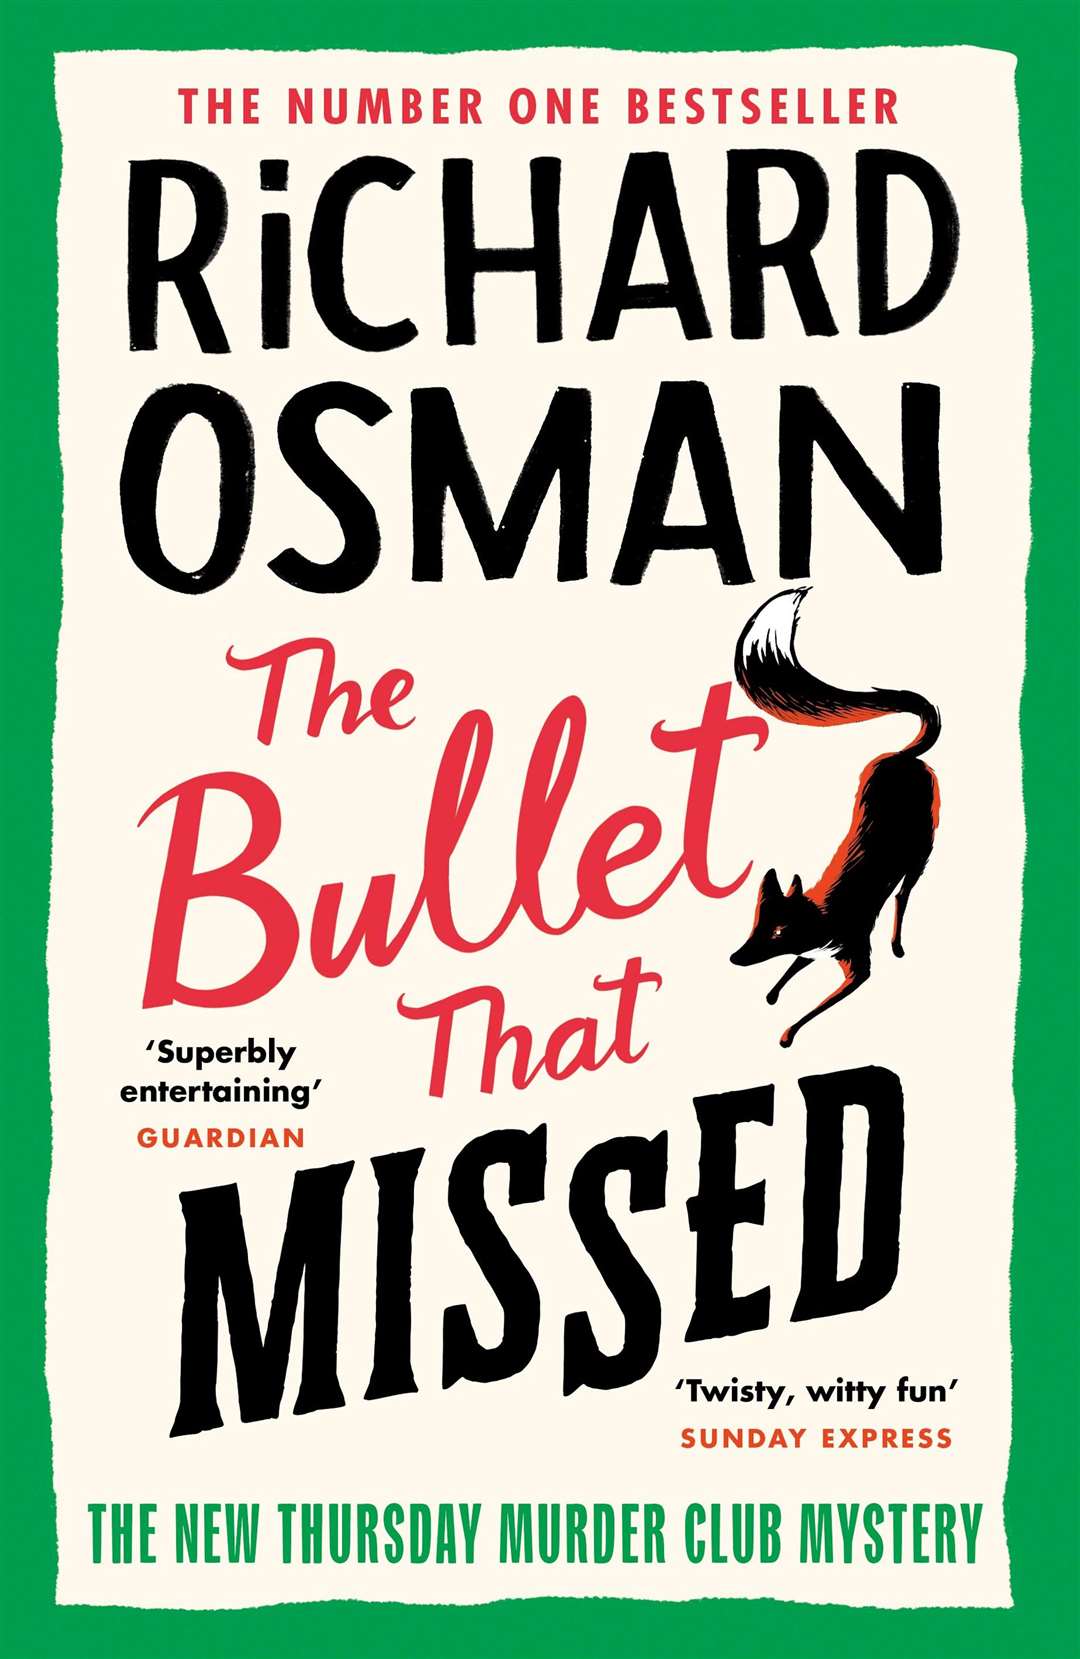 Richard Osman's third novel